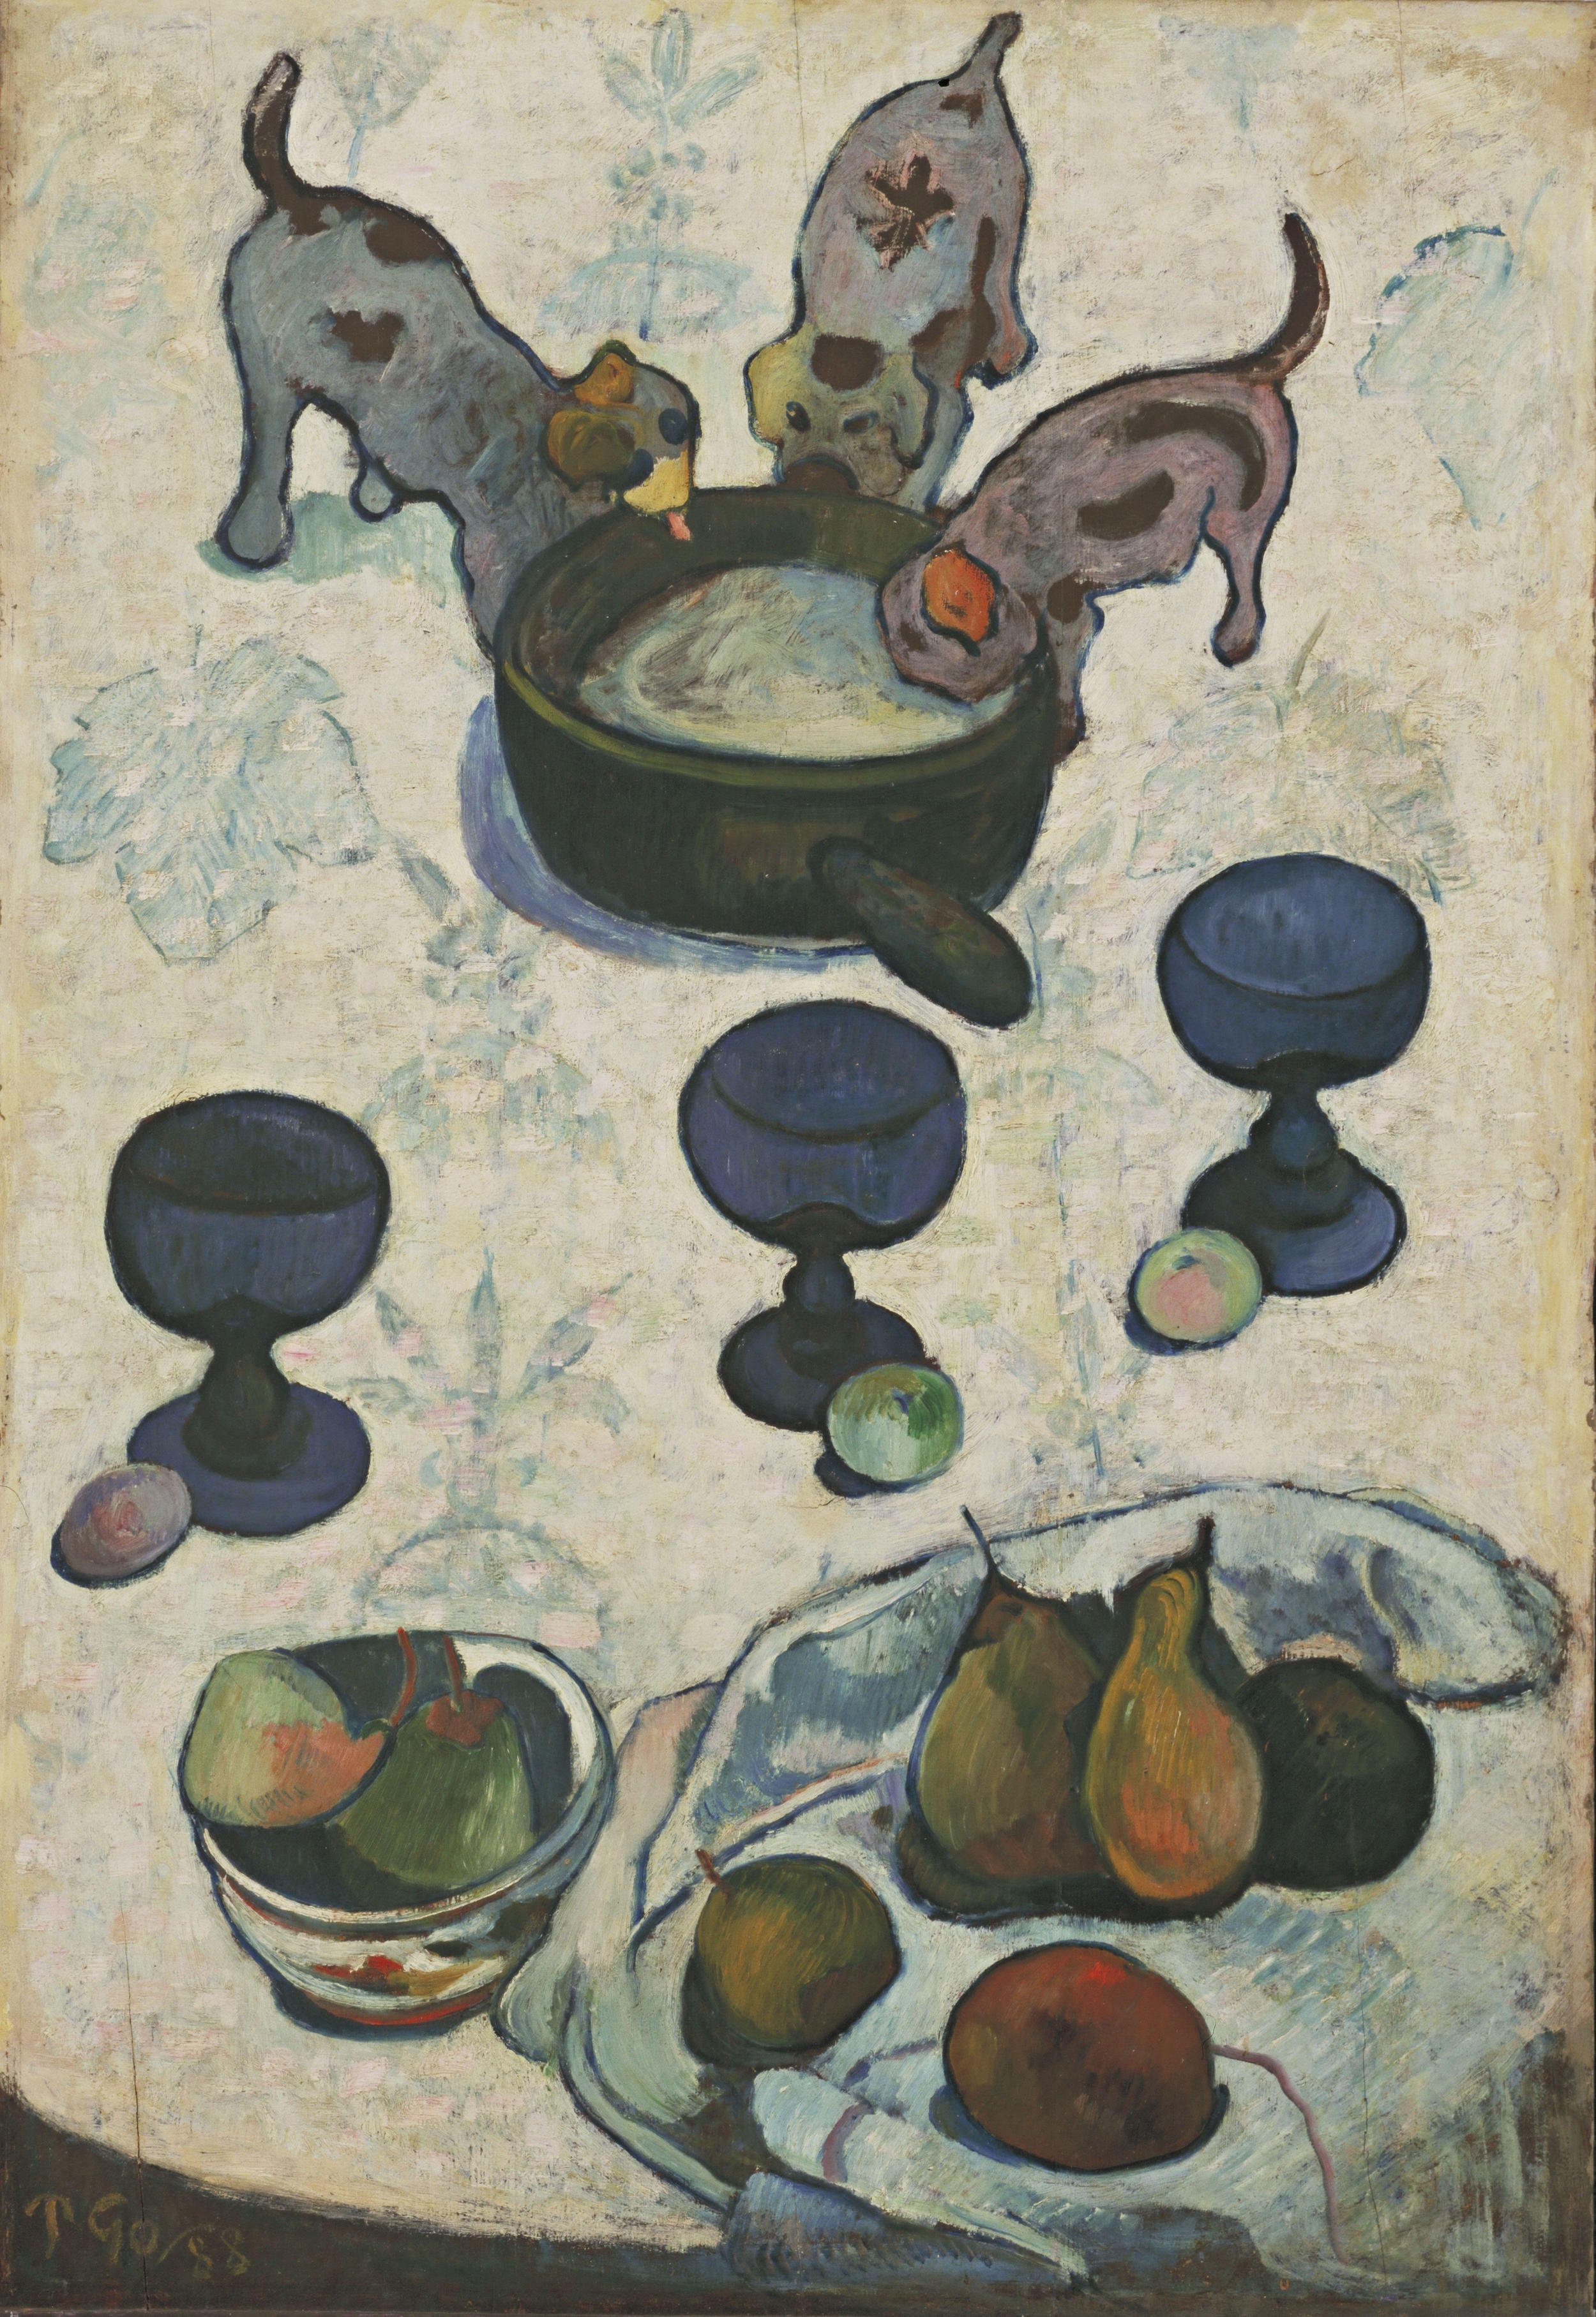 三只小狗的靜物畫 by Paul Gauguin - 1888 - 92 cm x 63 cm 